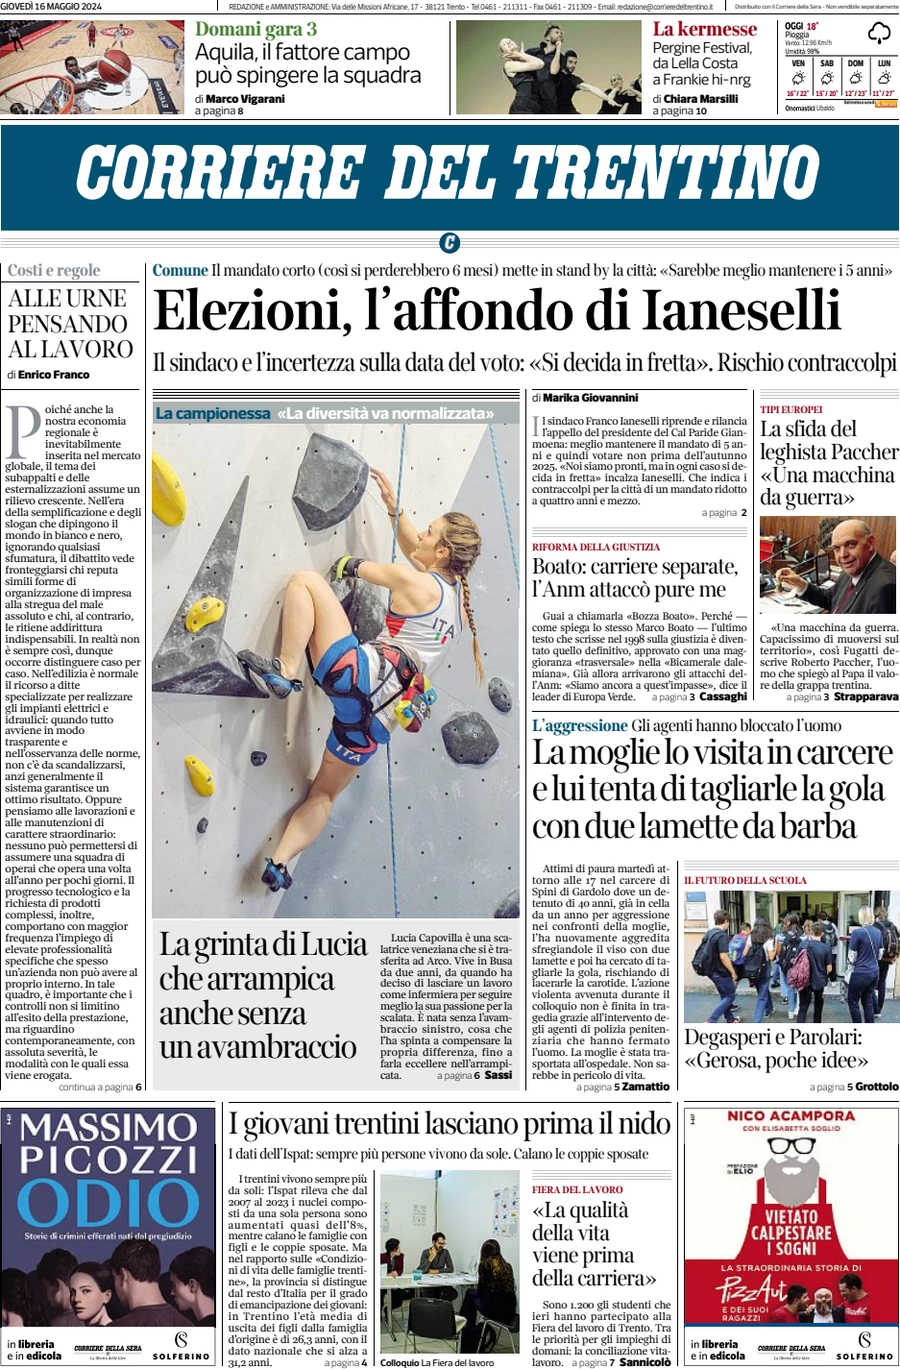 Anteprima prima pagina della rasegna stampa di ieri 2024-05-16 - corriere-del-trentino/